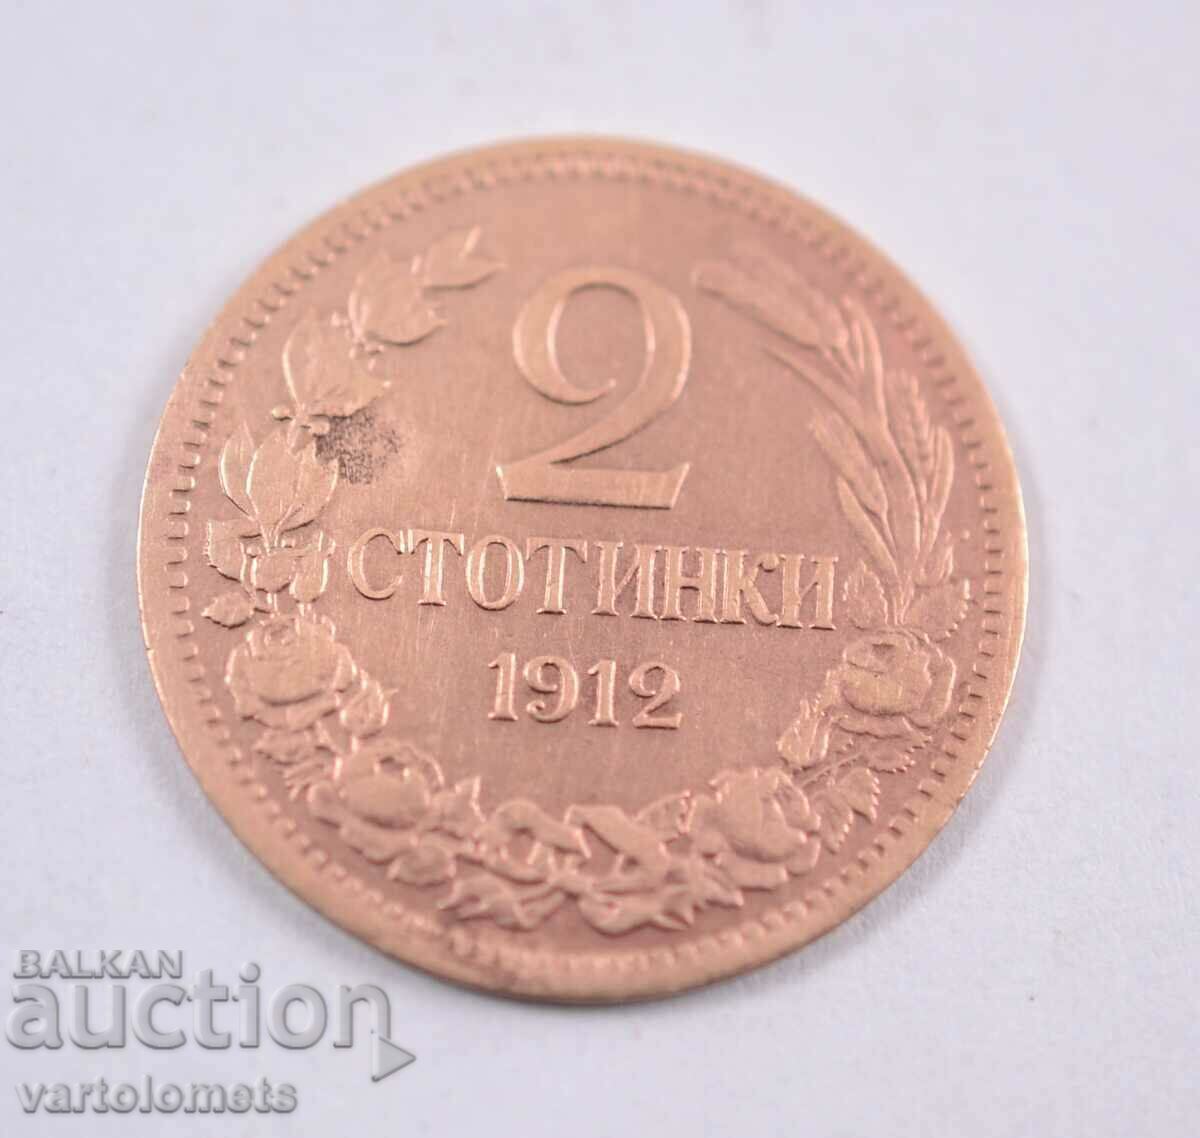 2 stotinki 1912 - Bulgaria